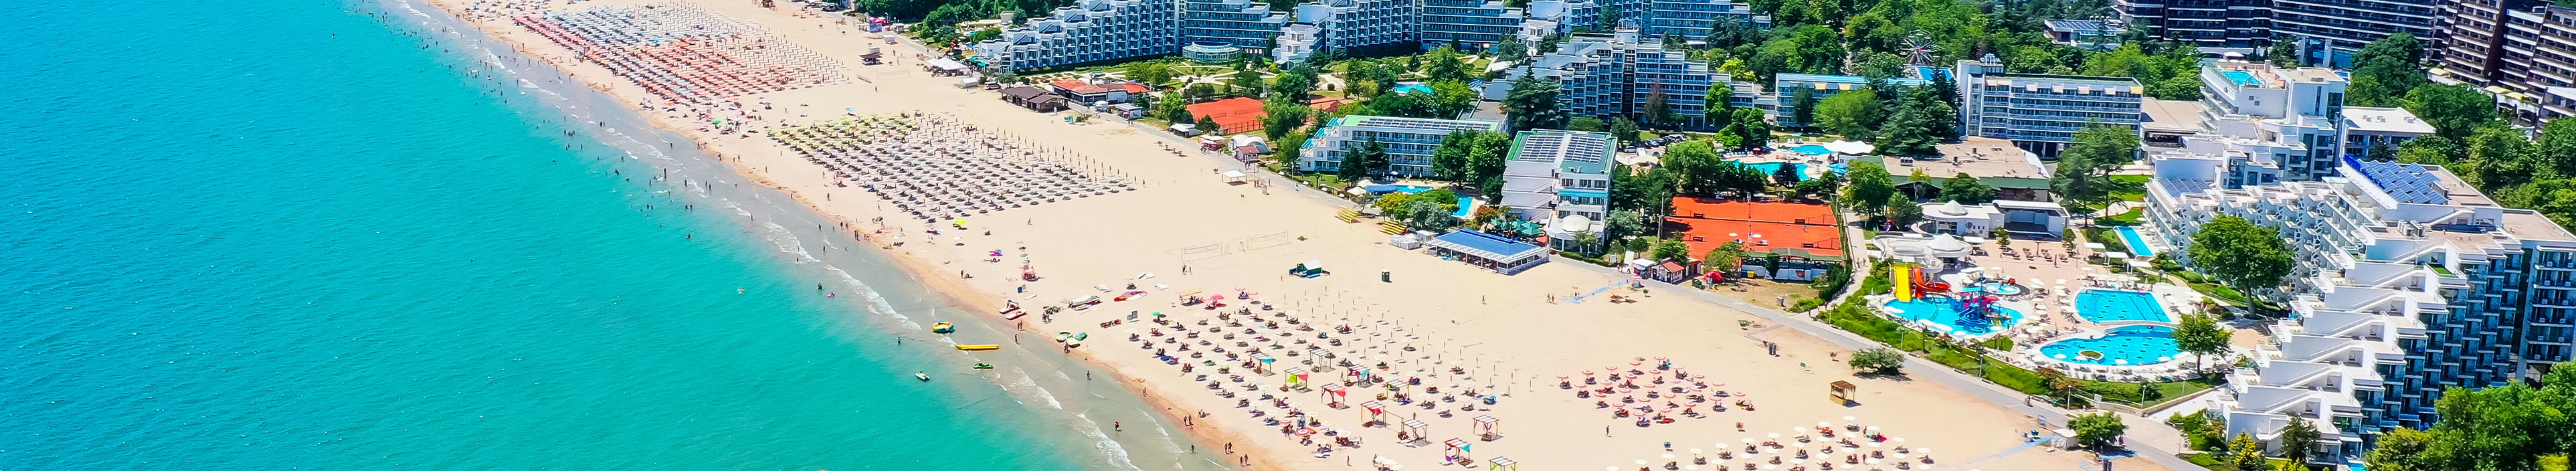 Blick auf einen Strand in Bulgarien mit Hotels und Sonnenschirmen am Strand. 